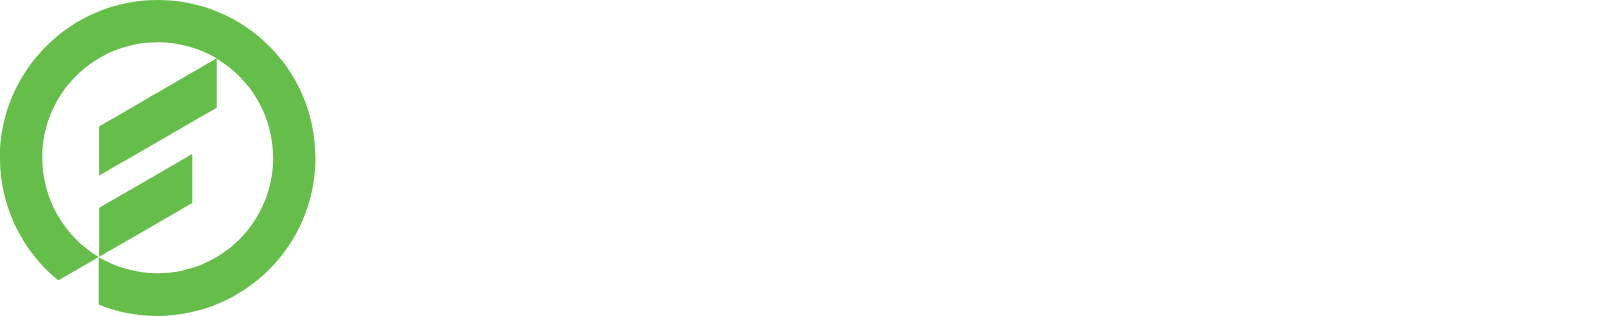 Fortive logo large for dark backgrounds (transparent PNG)